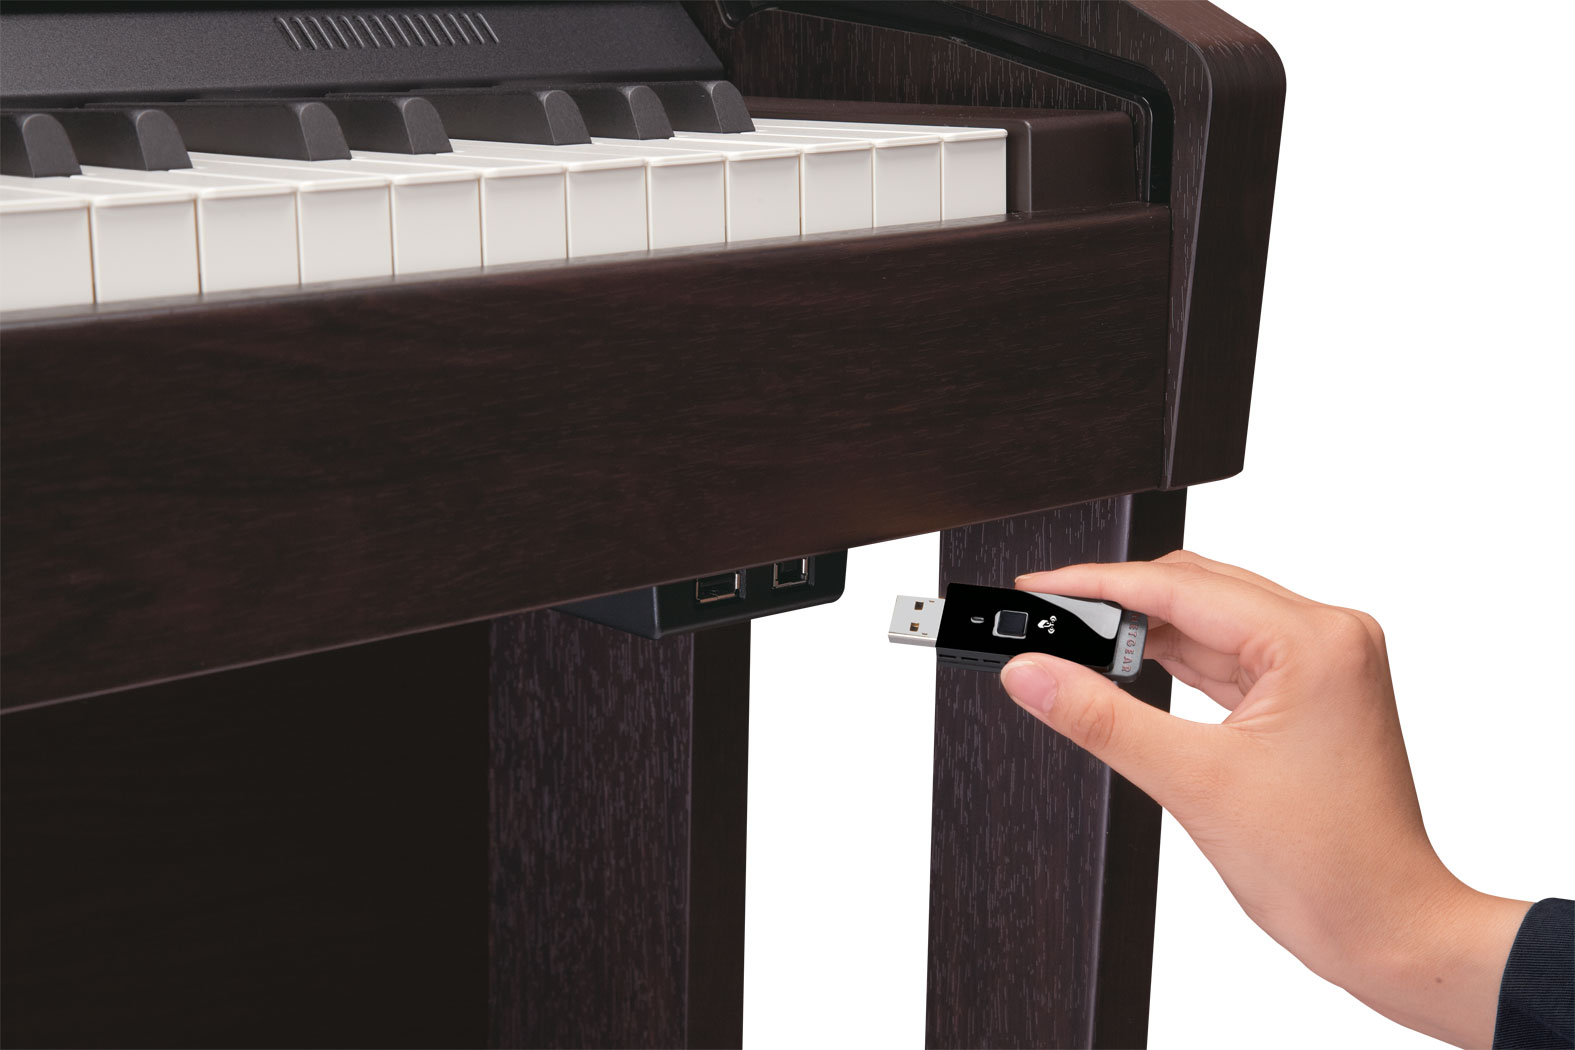 Roland - HPi-50e | Digital Piano